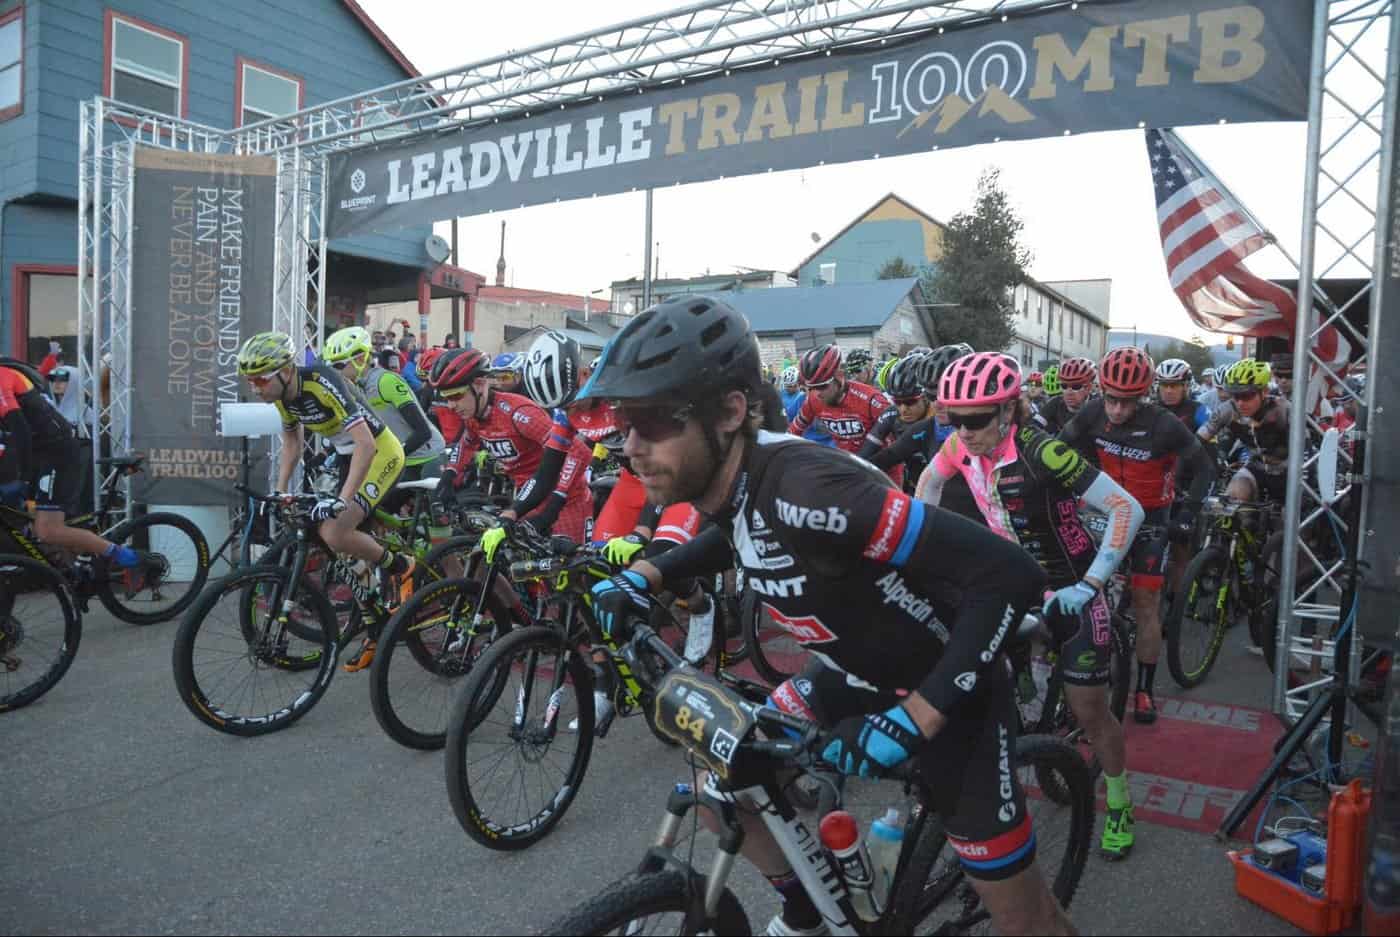 קו הזינוק - השנה קבוצת הפרו והסלבס' כללה שמות מוכרים מעולם אופני ההרים, הכביש וכדורגל אמריקאי (קידמת התמונה - לורנס טן דם). תומונה באדיבות: סטיב סאנדי (Steve Sunday)